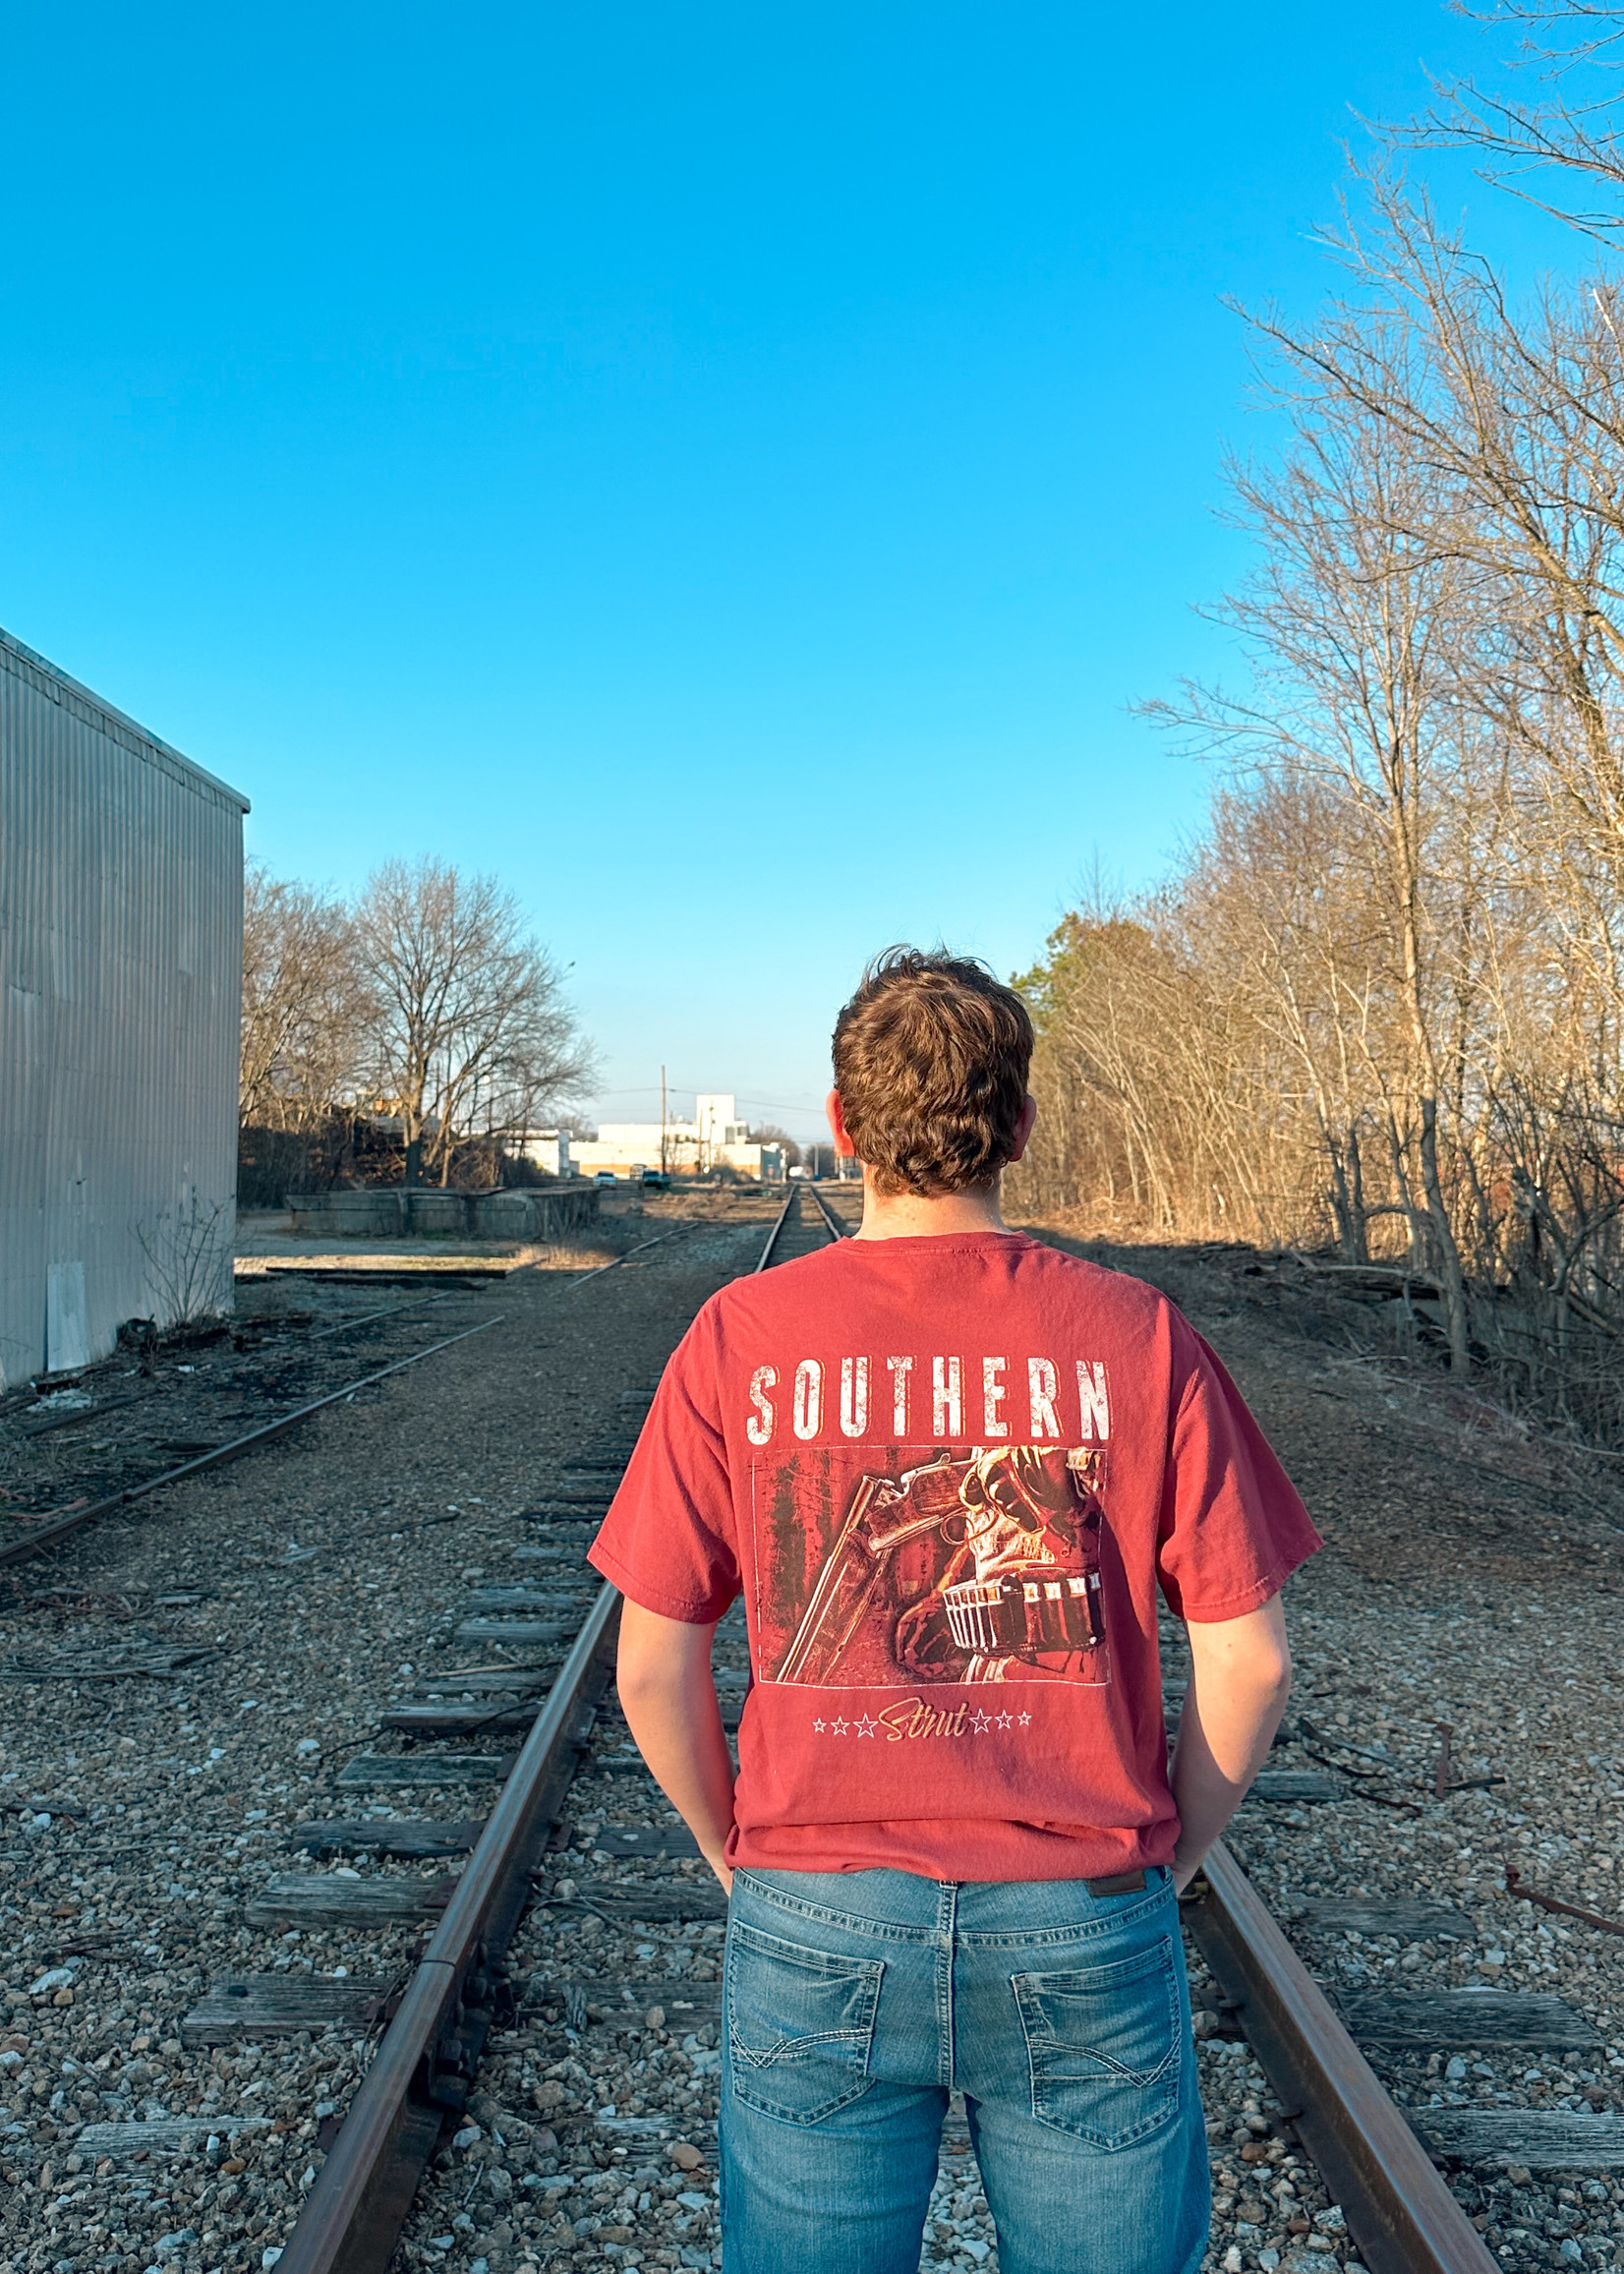 Southern Strut Southern Strut - Lead On Target T-shirt